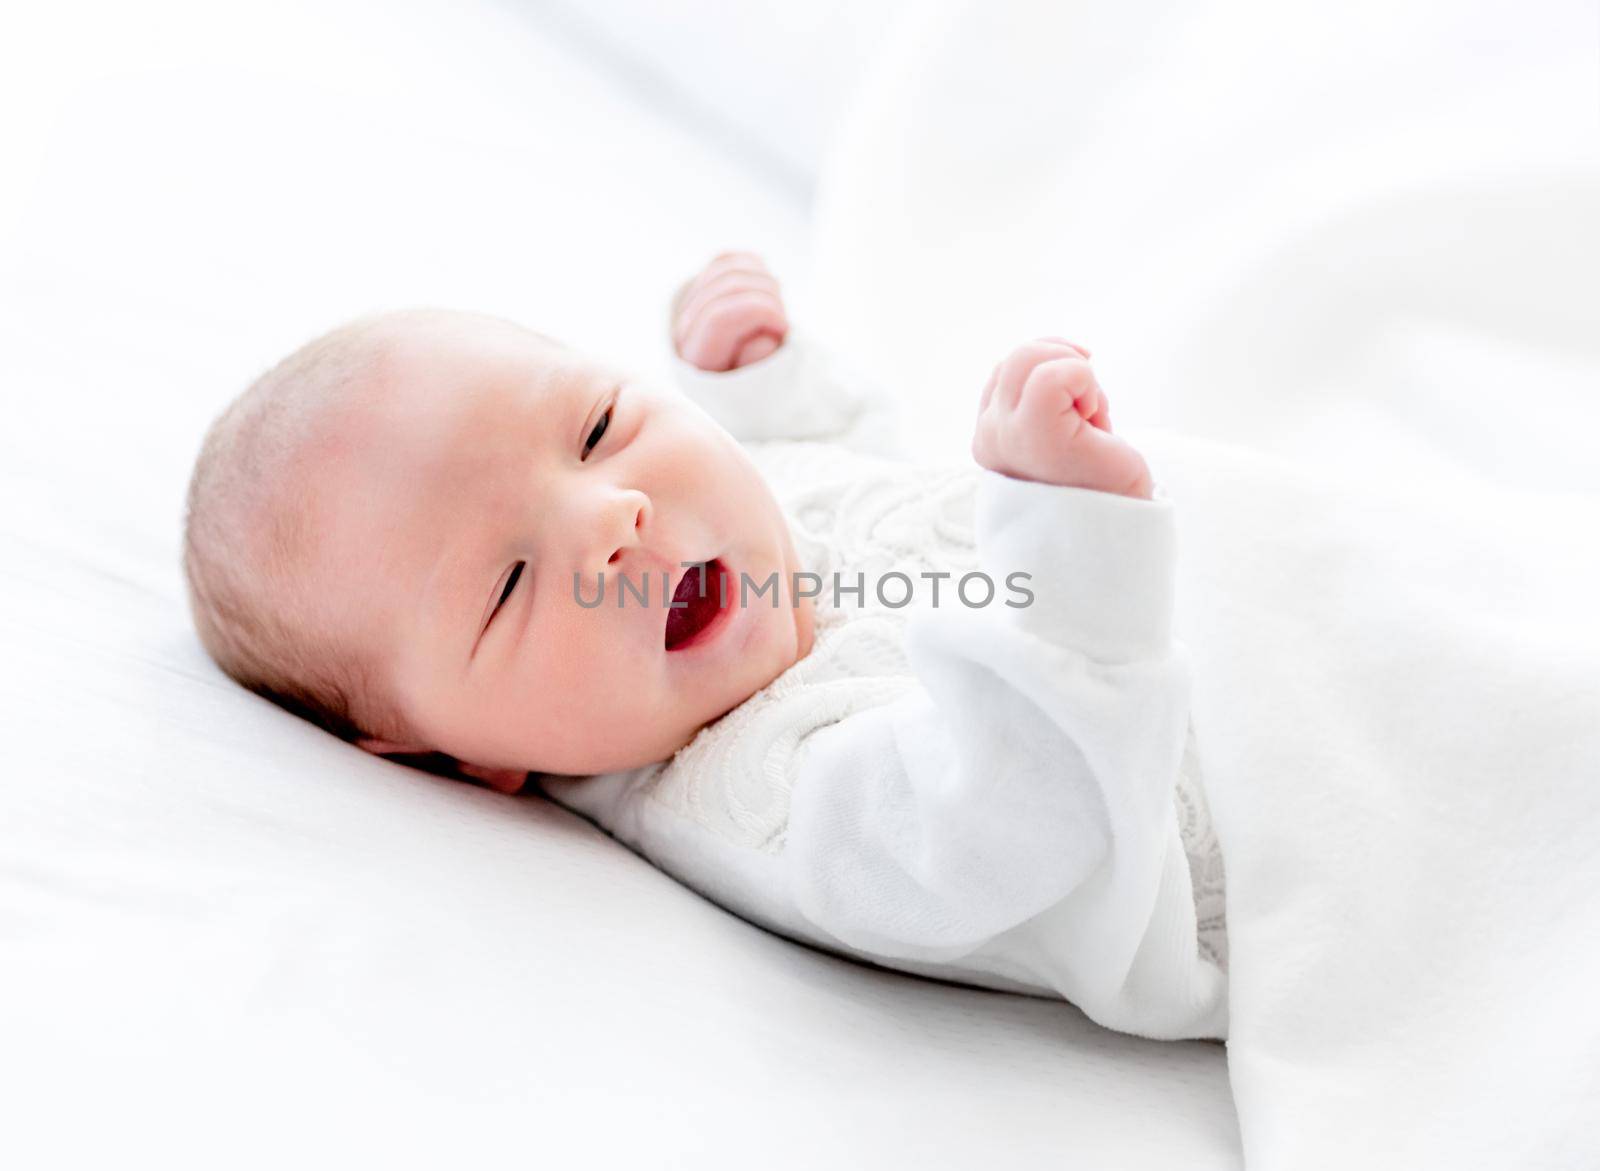 Newborn baby at home by tan4ikk1